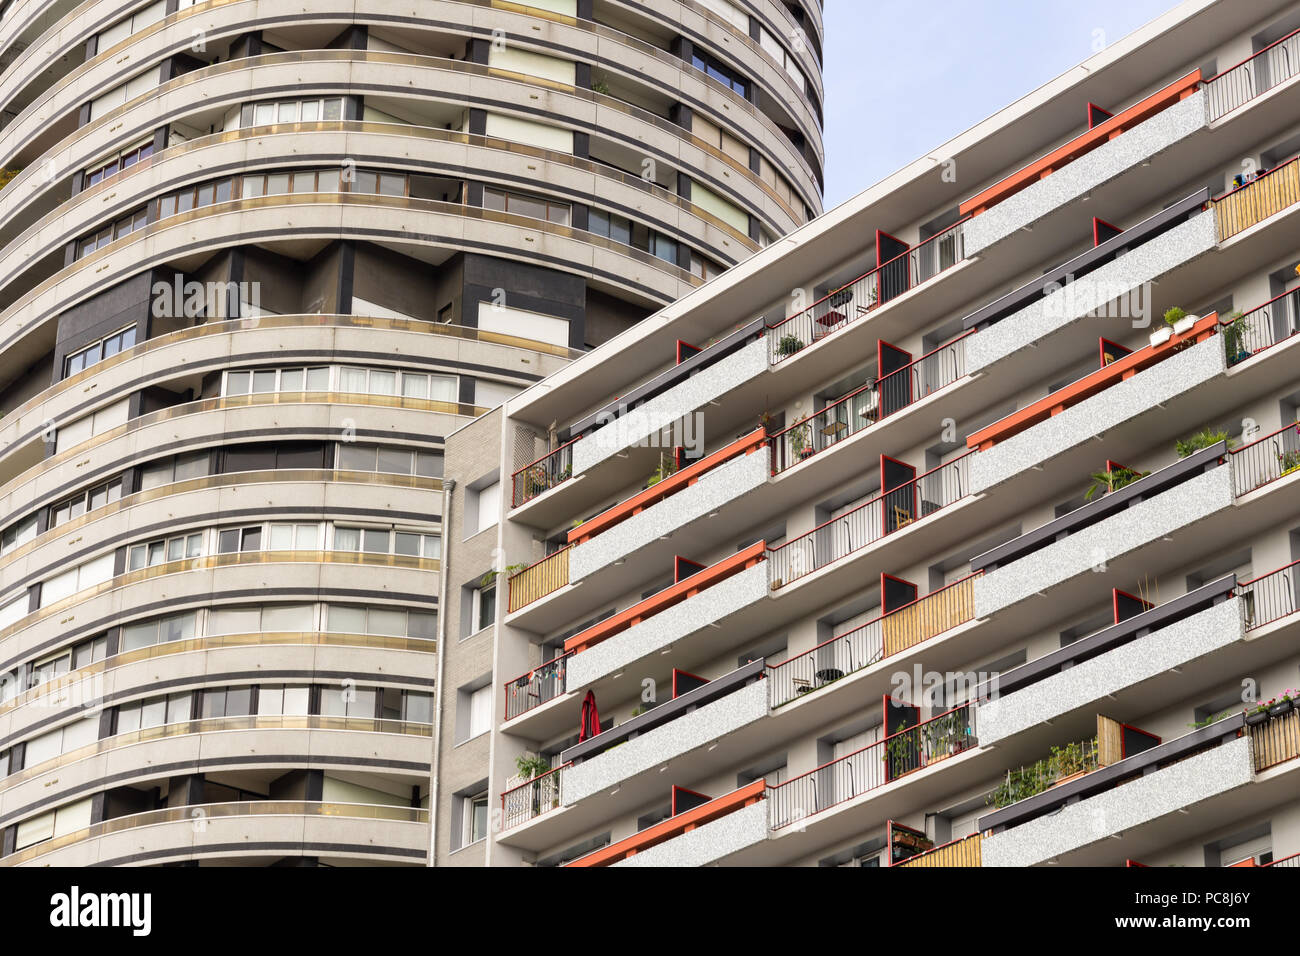 Paris Vororte - Wohngebäude, Teil des Olympiades Bezirk im 13. arrondissement von Paris, Frankreich, Europa. Stockfoto